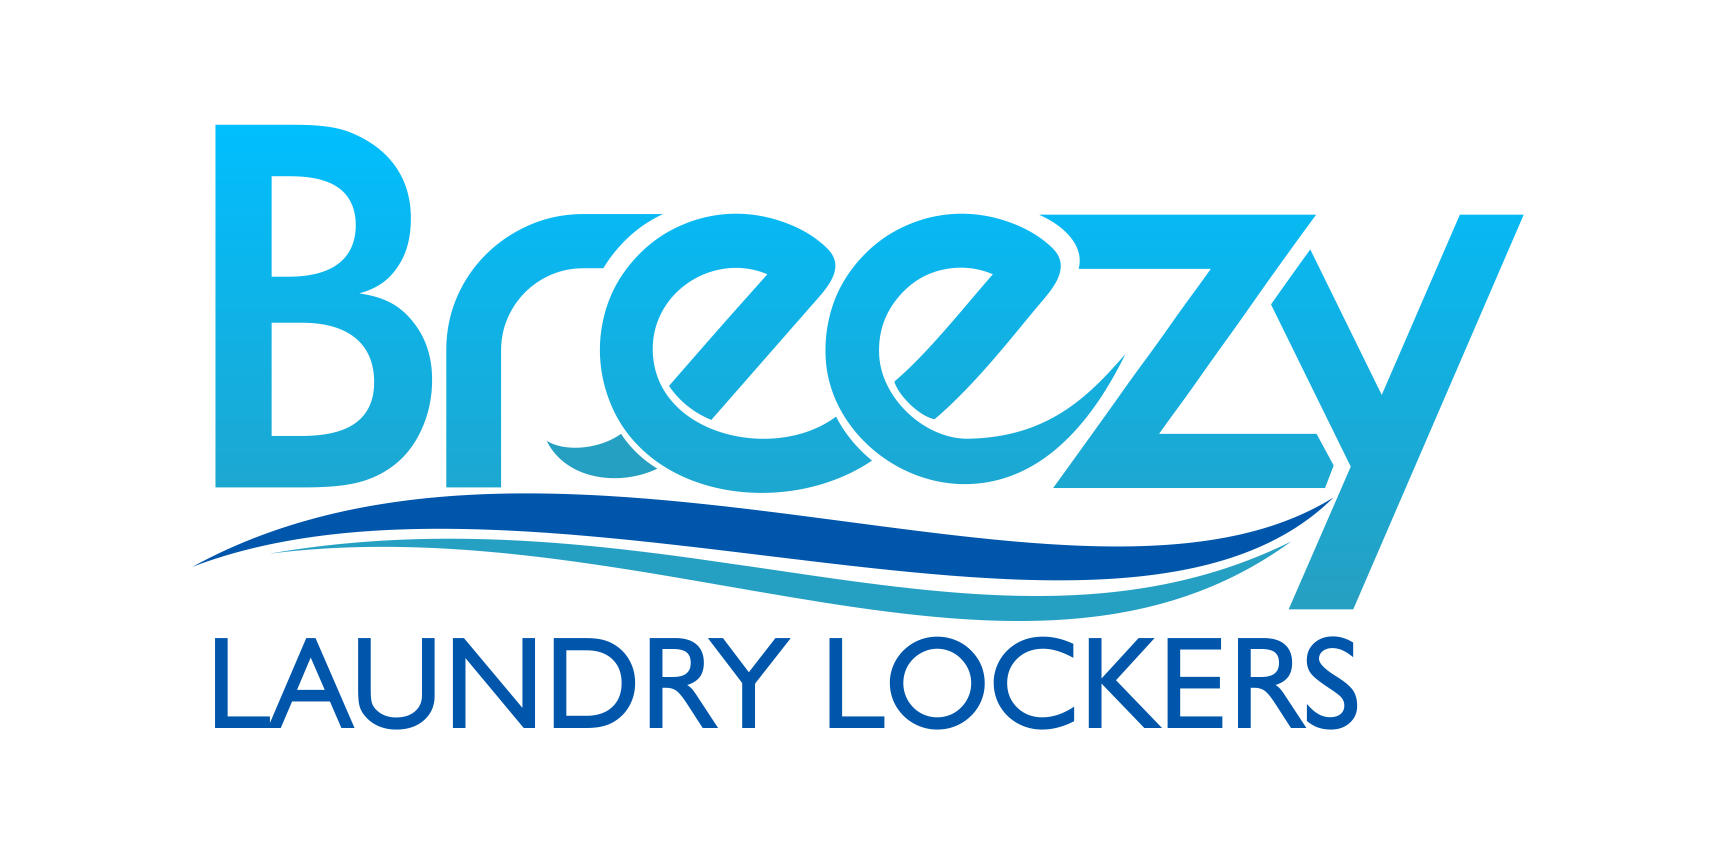 Breezy Laundry Lockers logo